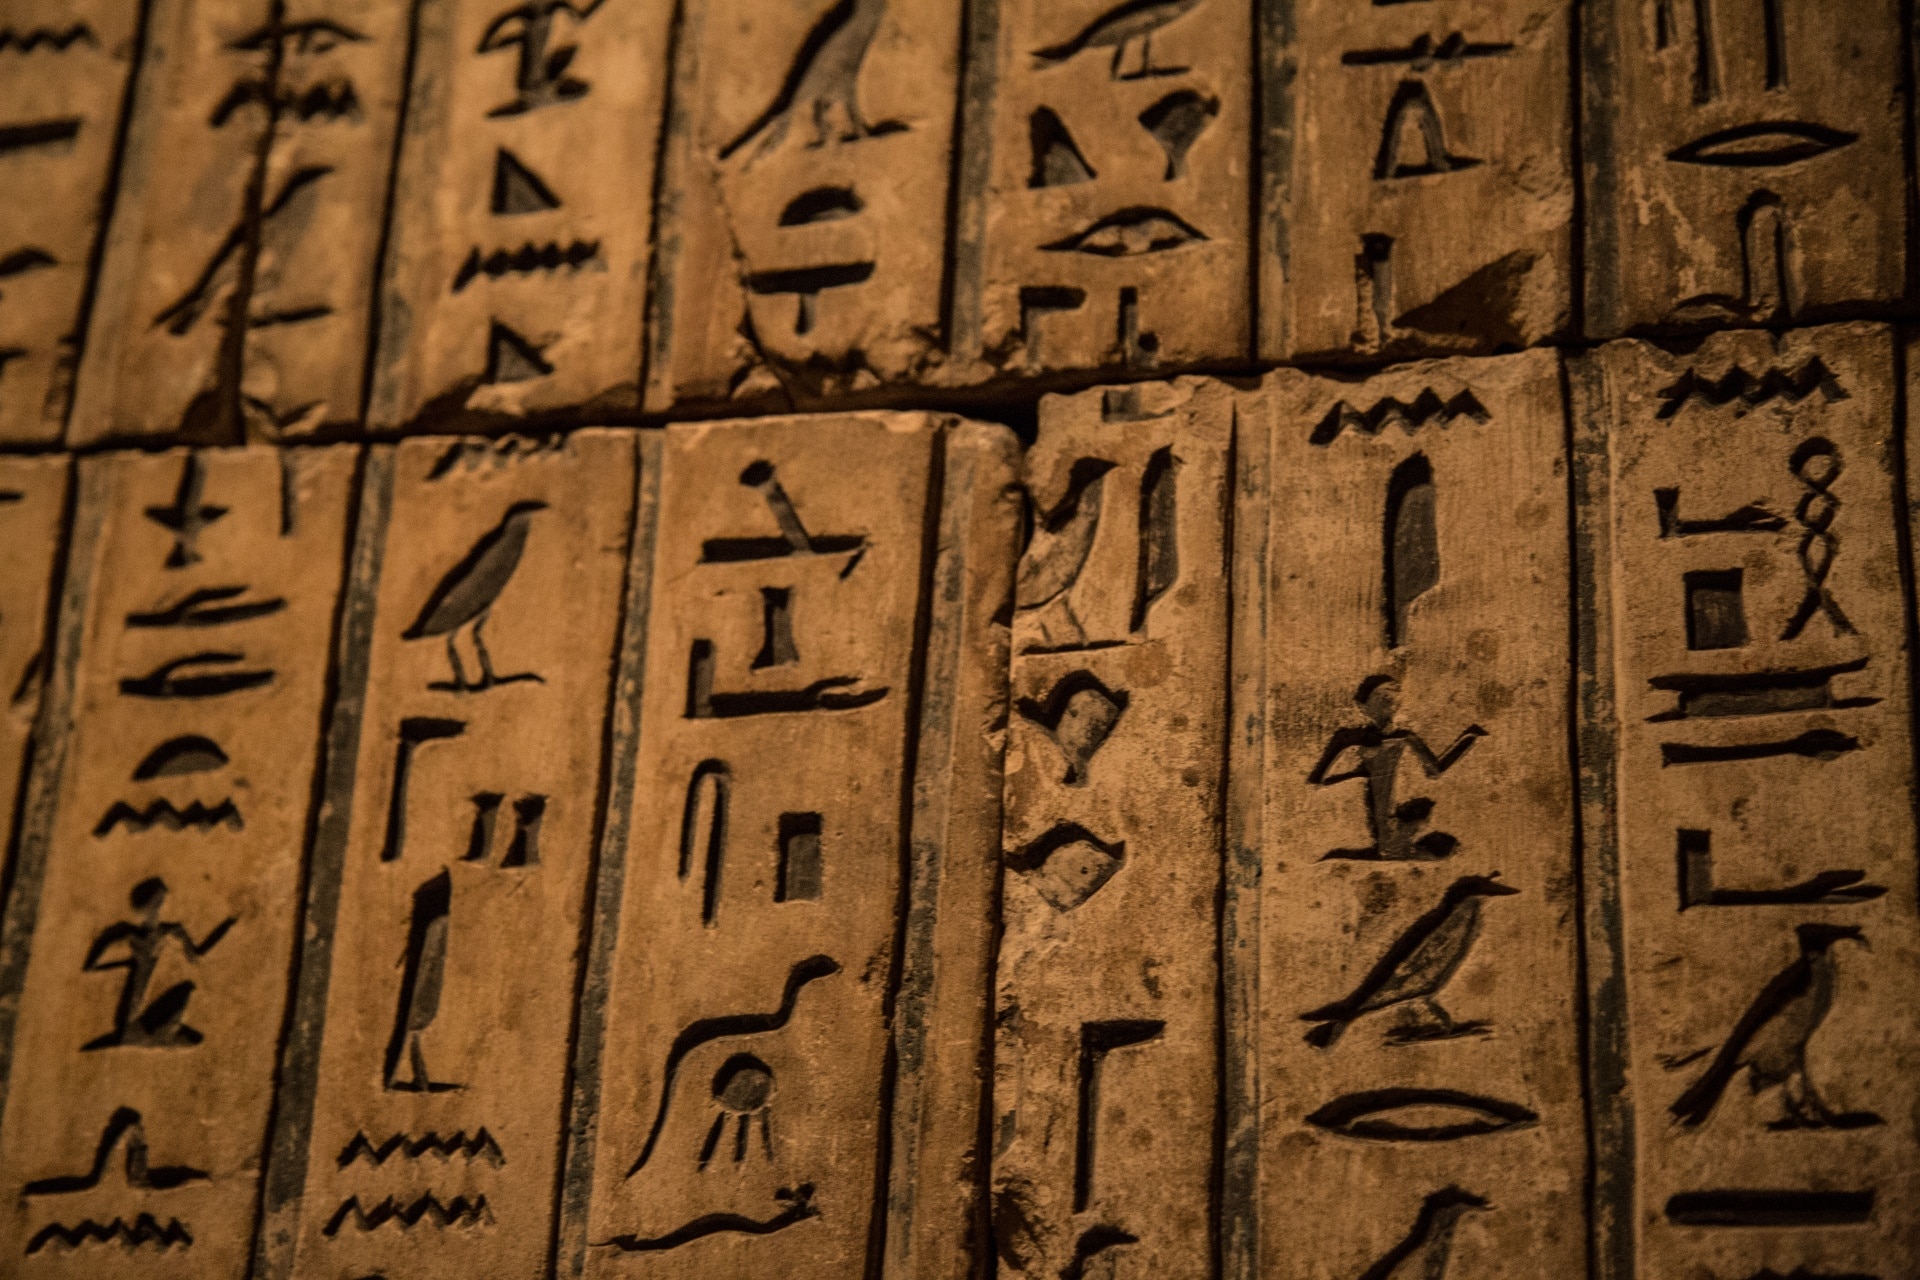 Ancient Egypt Trivia Questions